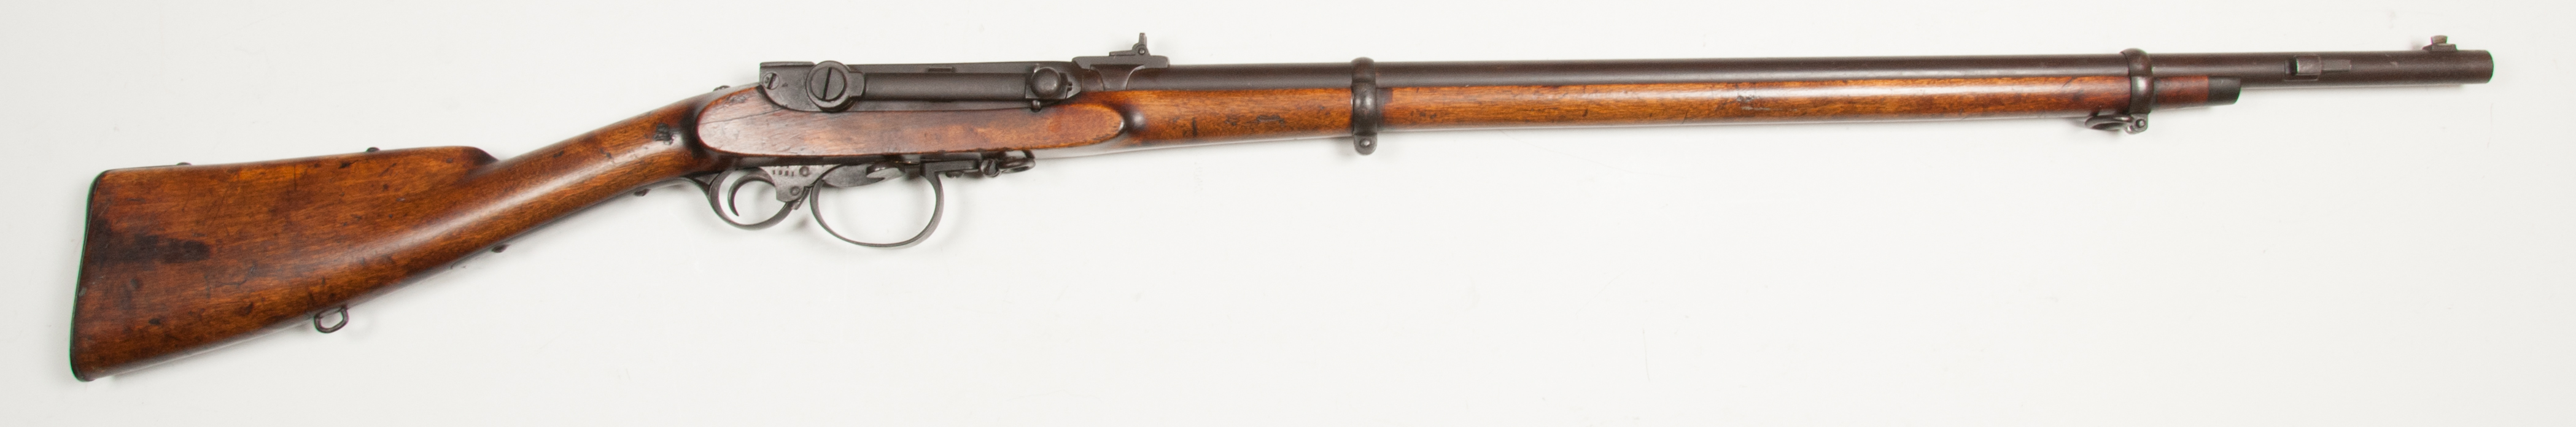 ./guns/rifle/bilder/Rifle-Kongsberg-Kammerlader-M1860-Kort-154-1861-Skytterlag-1.jpg